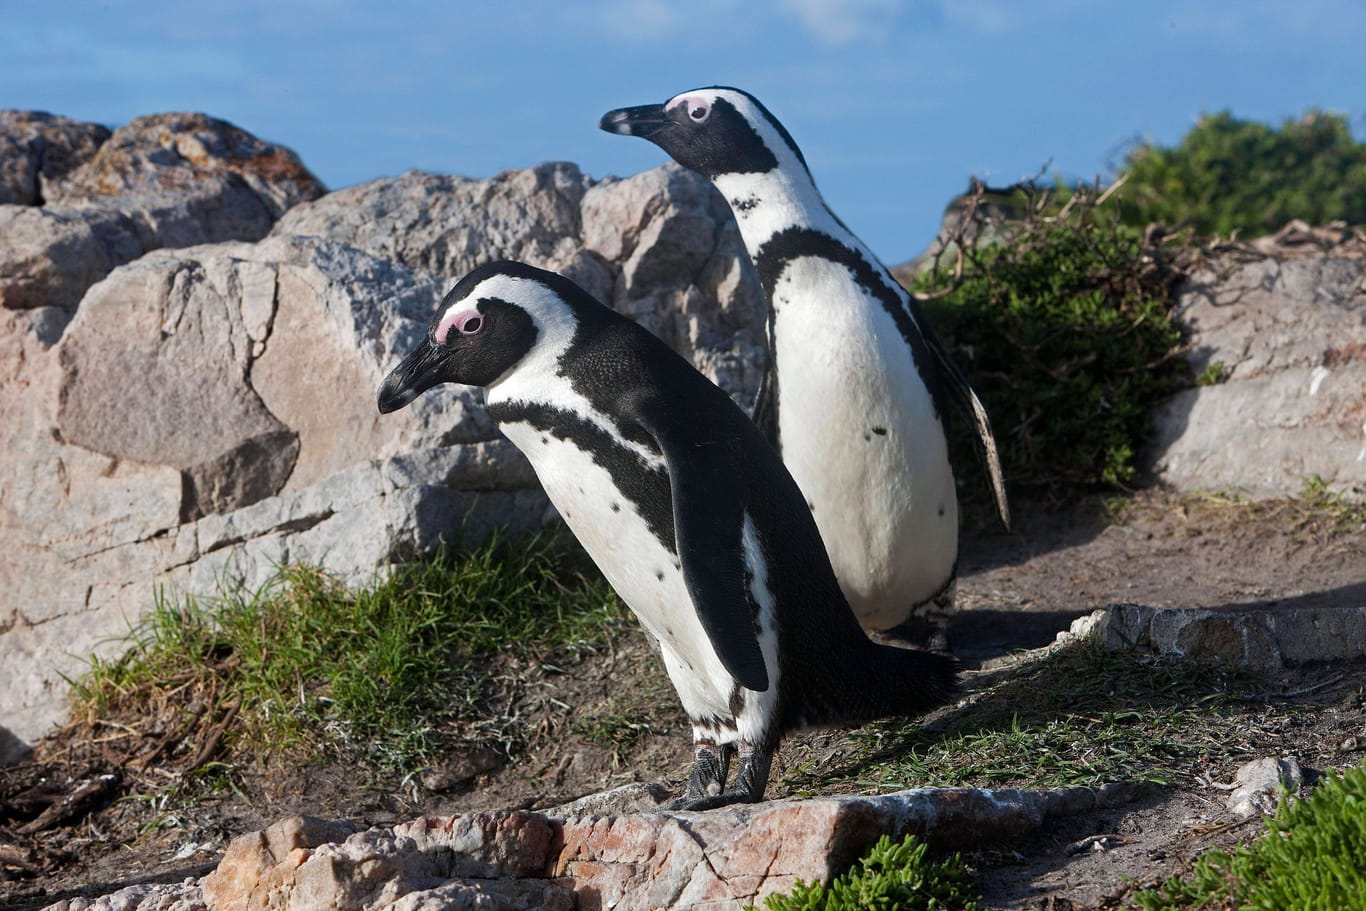 Eselspinguin oder Brillenpinguin (spheniscus demersus): Der Pinguin, der vor allem im Süden Afrikas vorkommt, ist besonders bedroht.